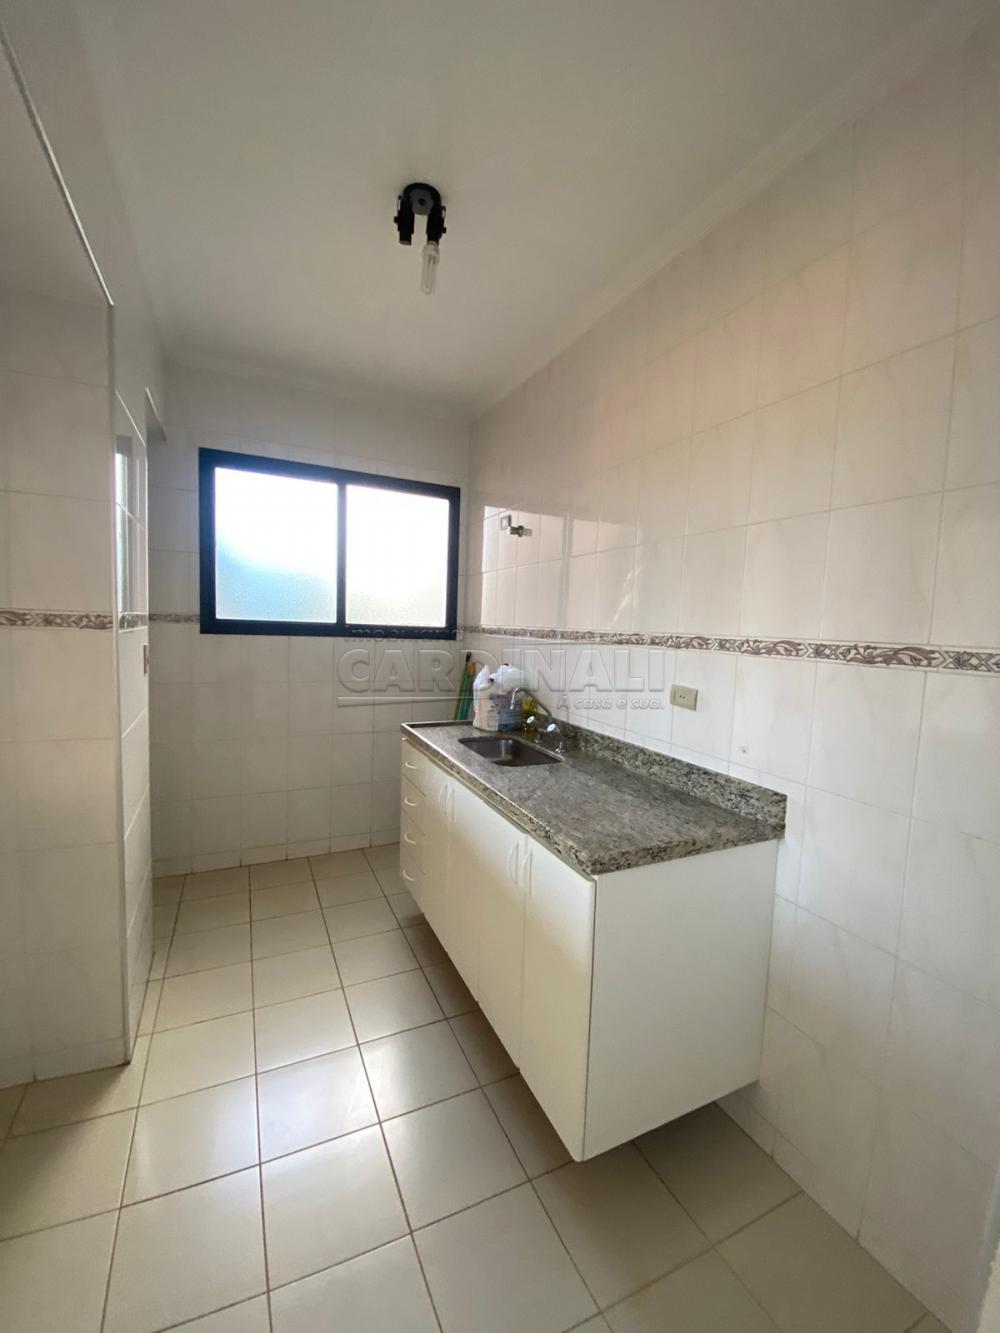 Alugar Apartamento / Padrão em São Carlos R$ 1.556,00 - Foto 12